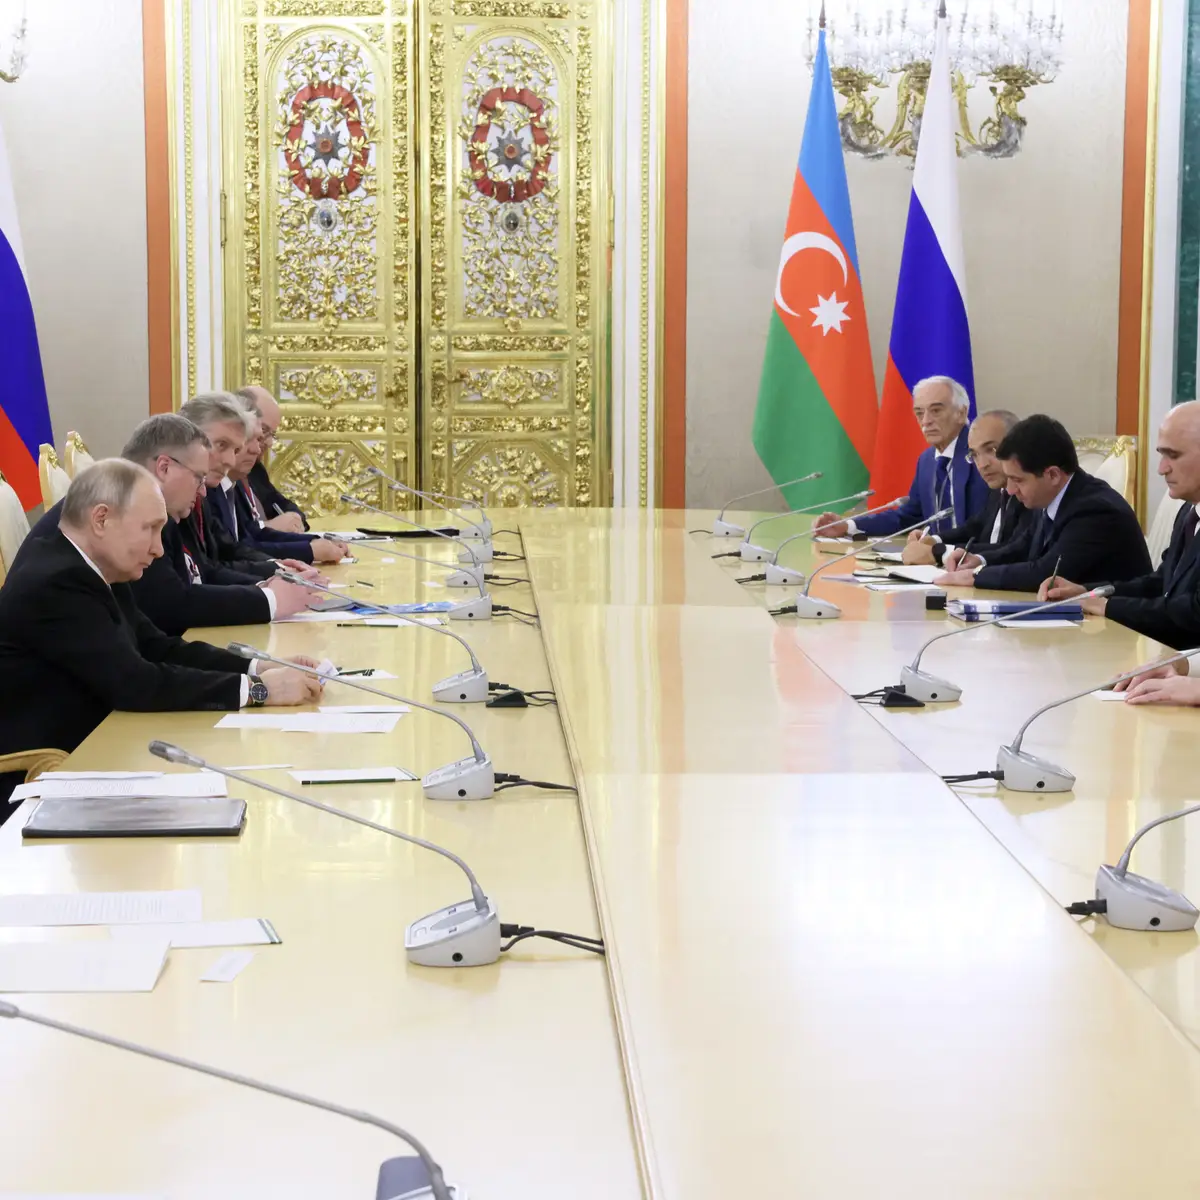 Novos confrontos entre Arménia e Azerbaijão antes das negociações de paz -  Expresso